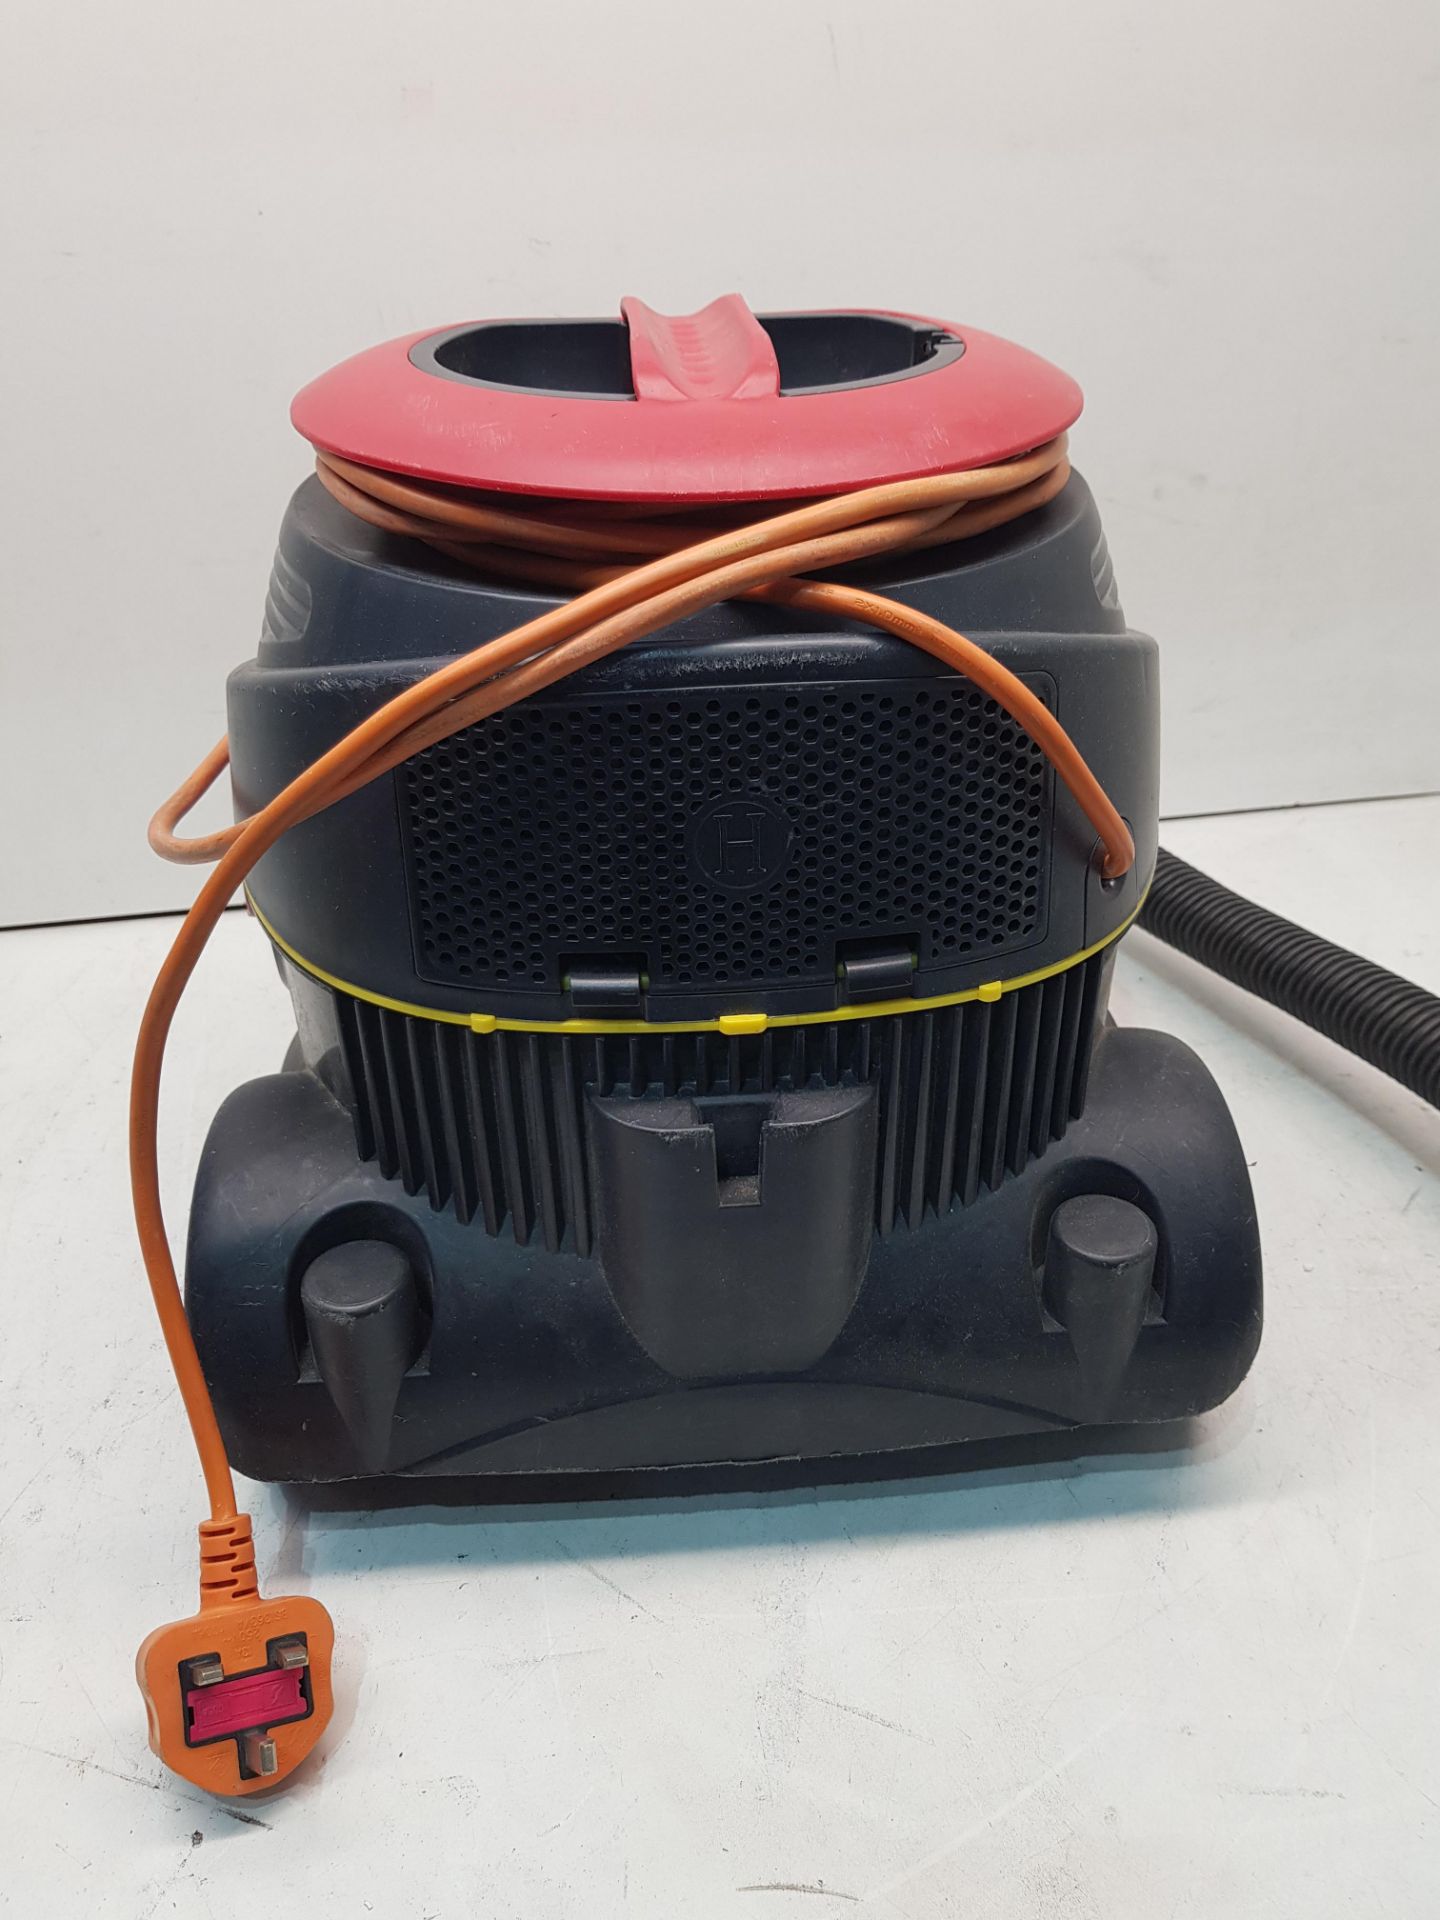 Viper Vacuum Cleaner - Image 2 of 3